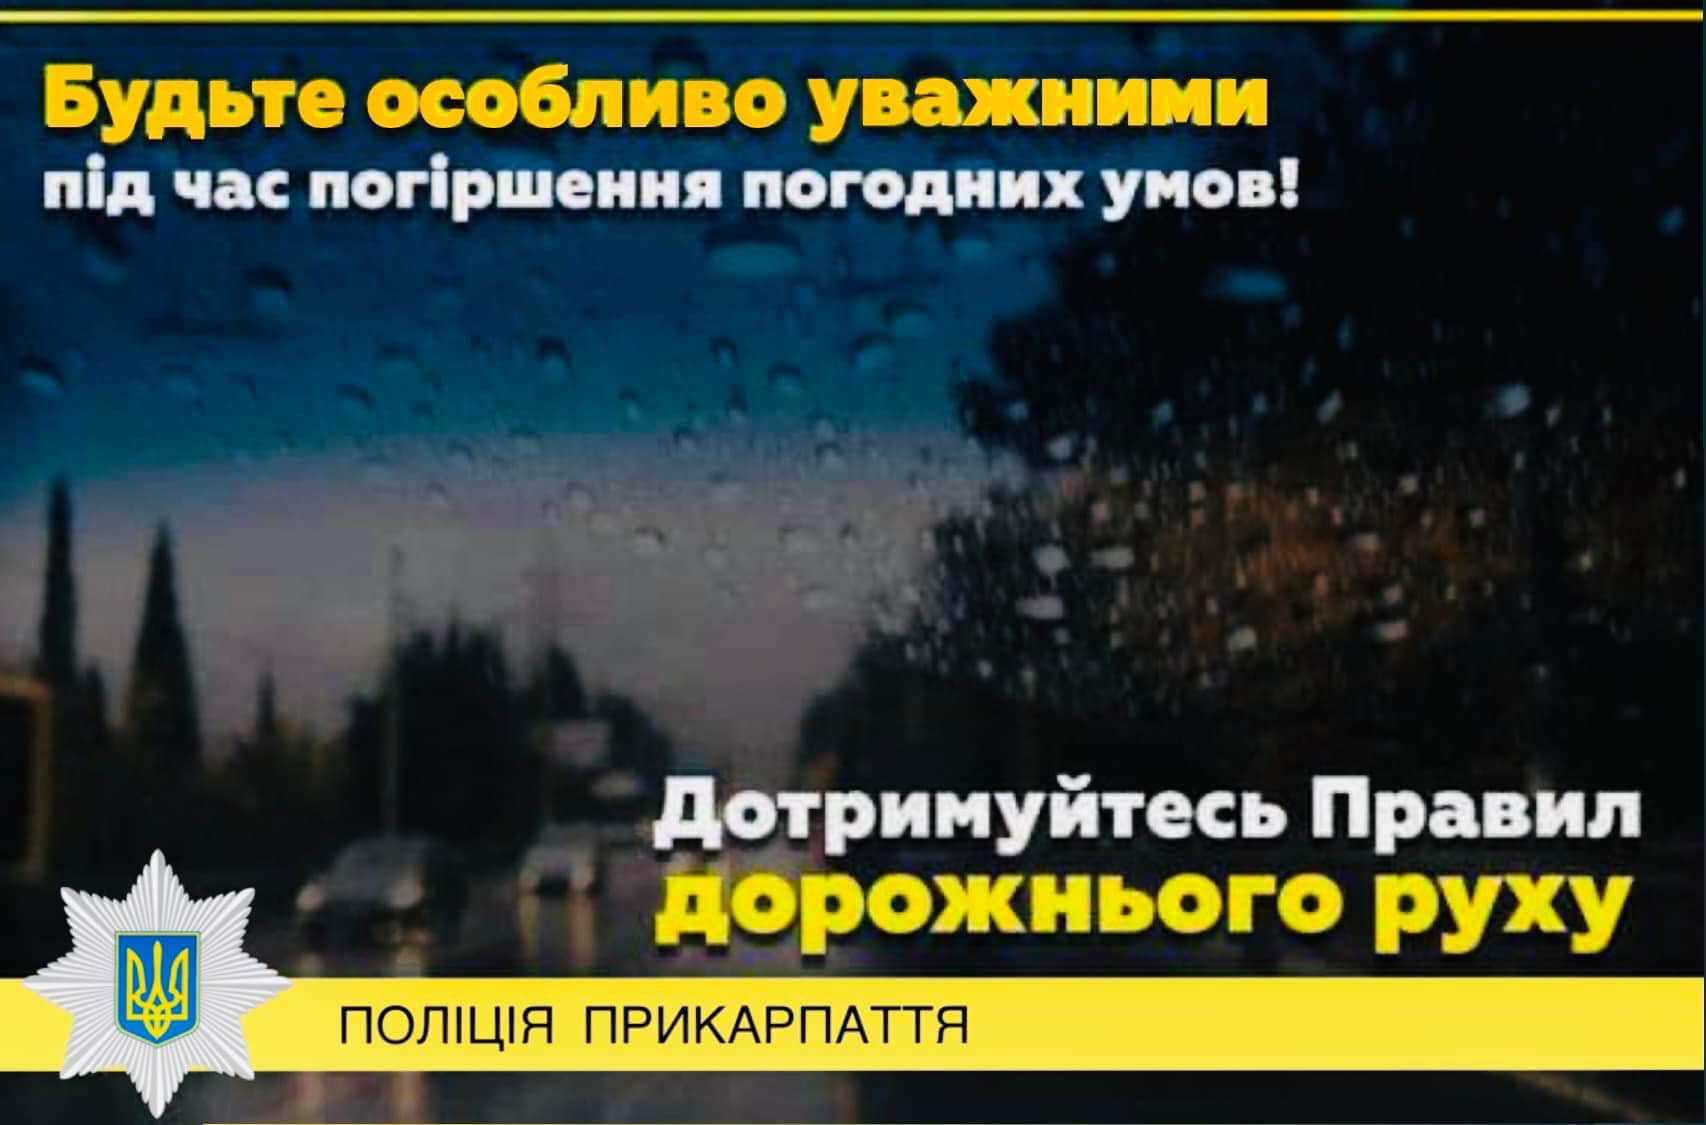 На Прикарпатті погіршення погодних умов. Патрульна поліція Івано-Франківської області закликає громадян бути максимально обережними!